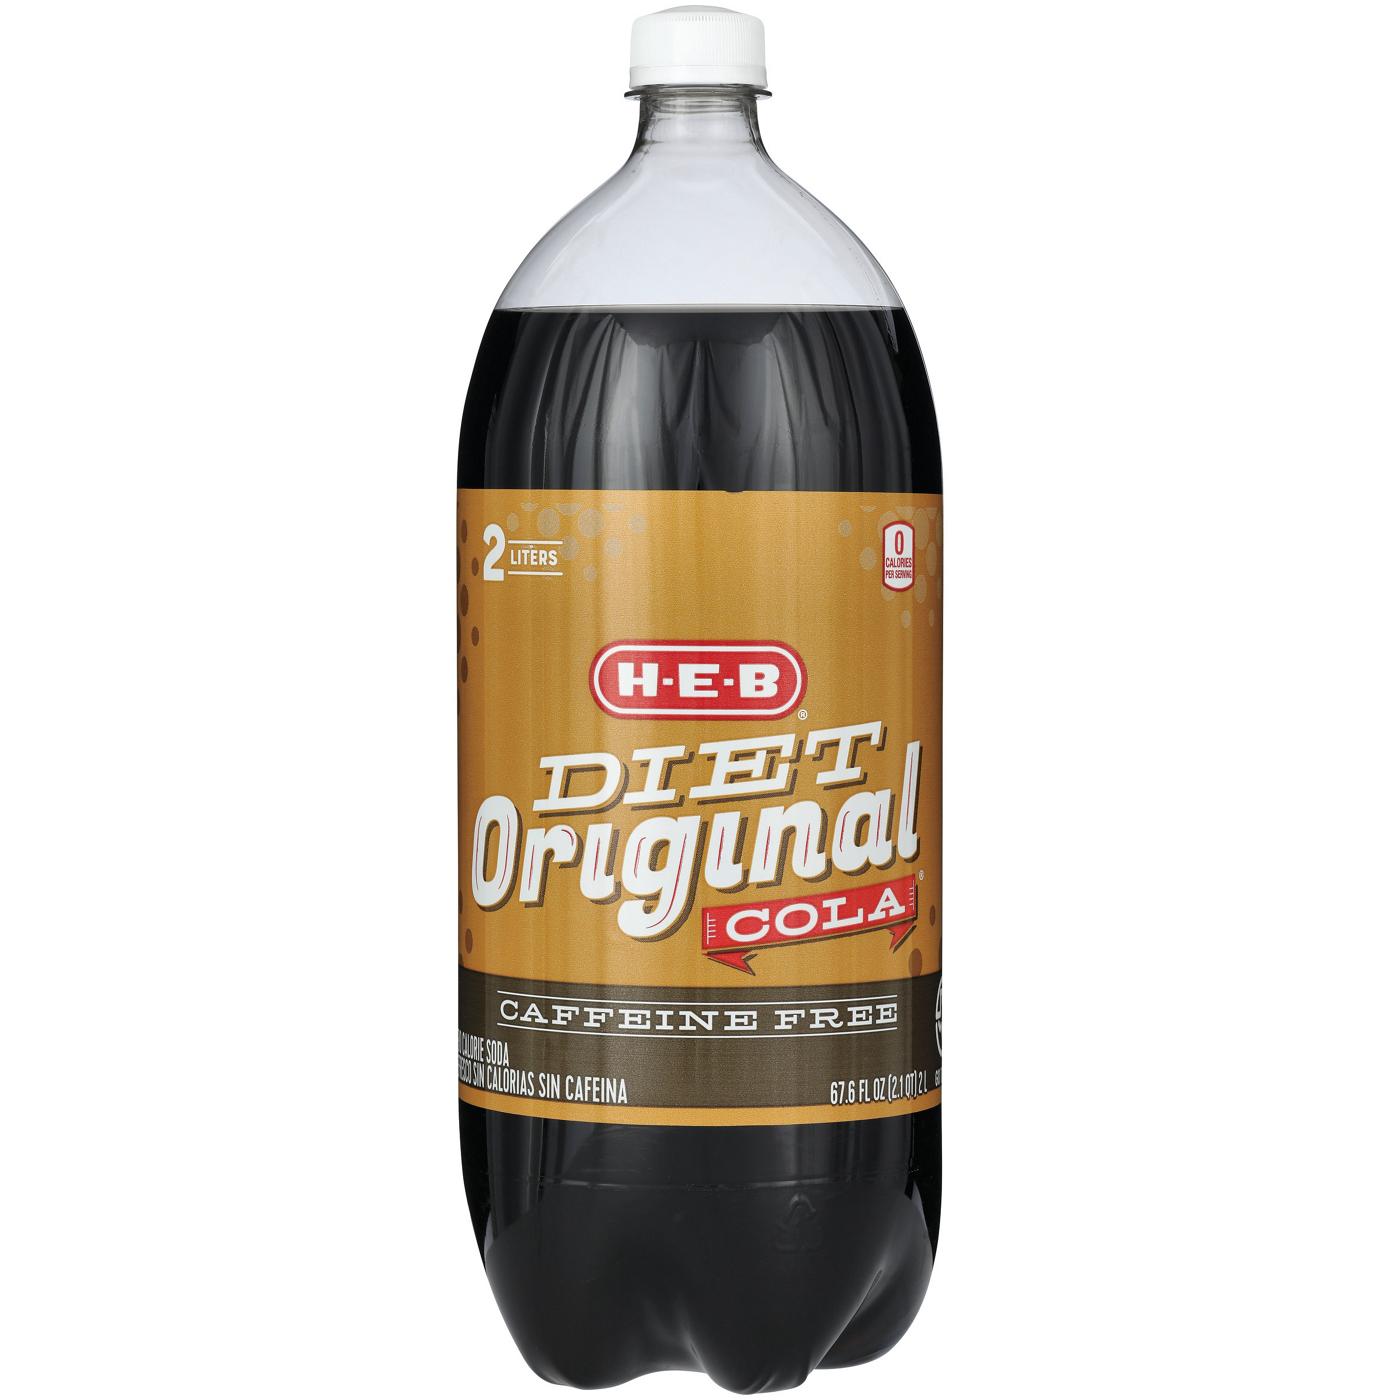 H-E-B Caffeine-Free Diet Original Cola Soda; image 2 of 2